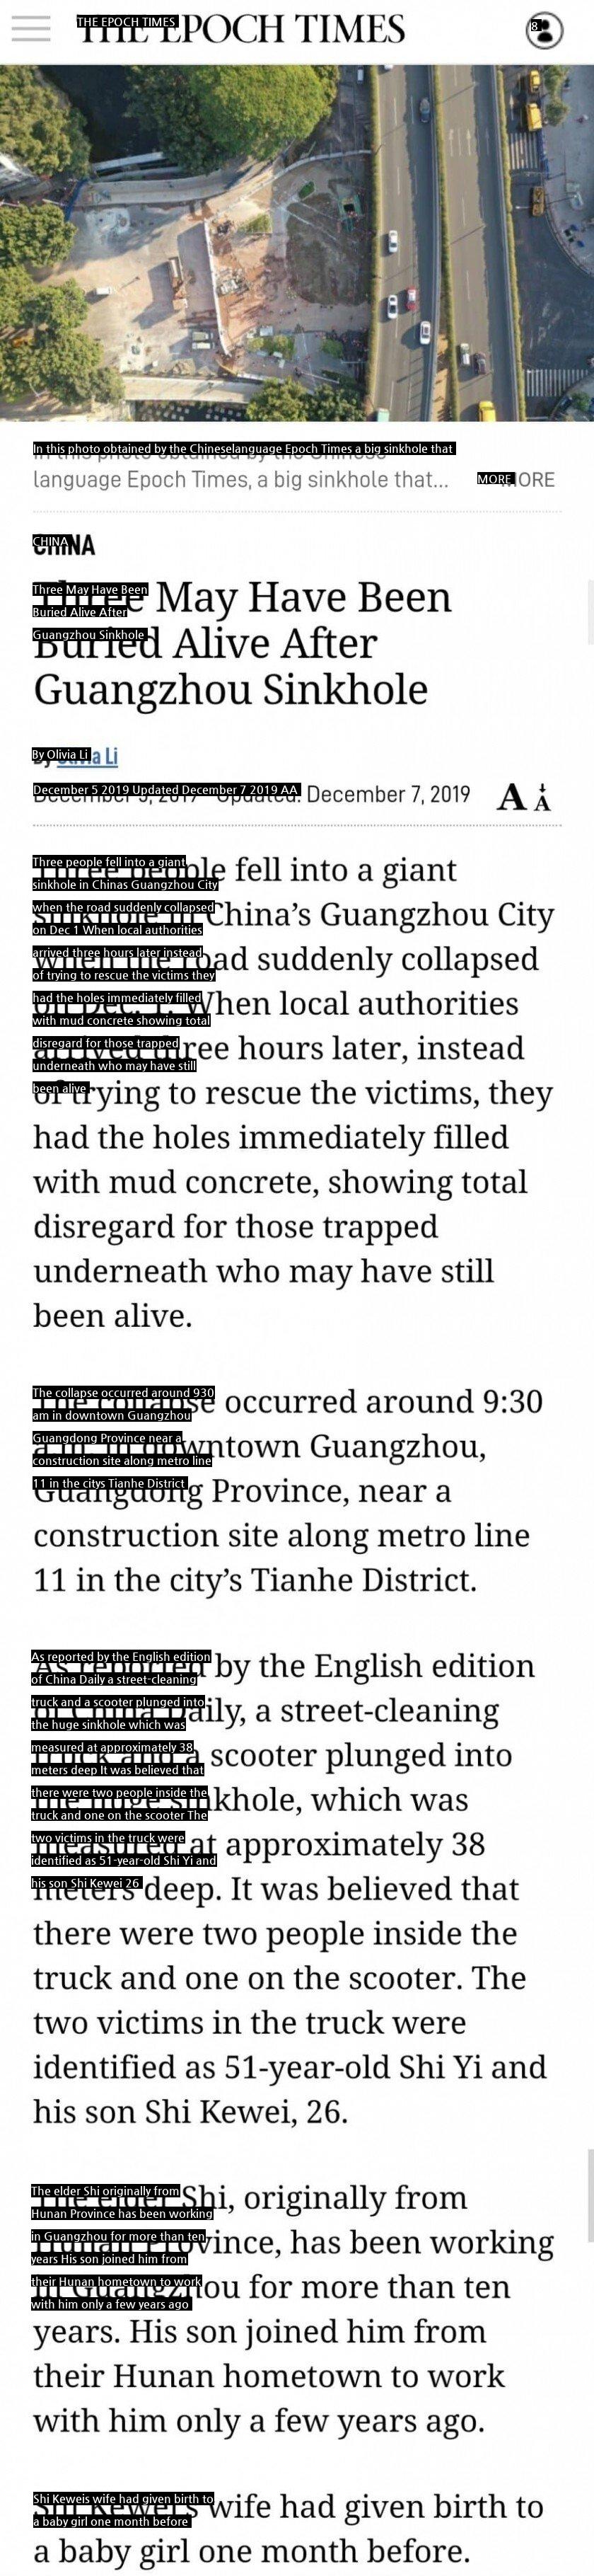 シンクホール行方不明者を生き埋めにした中国政府jpg